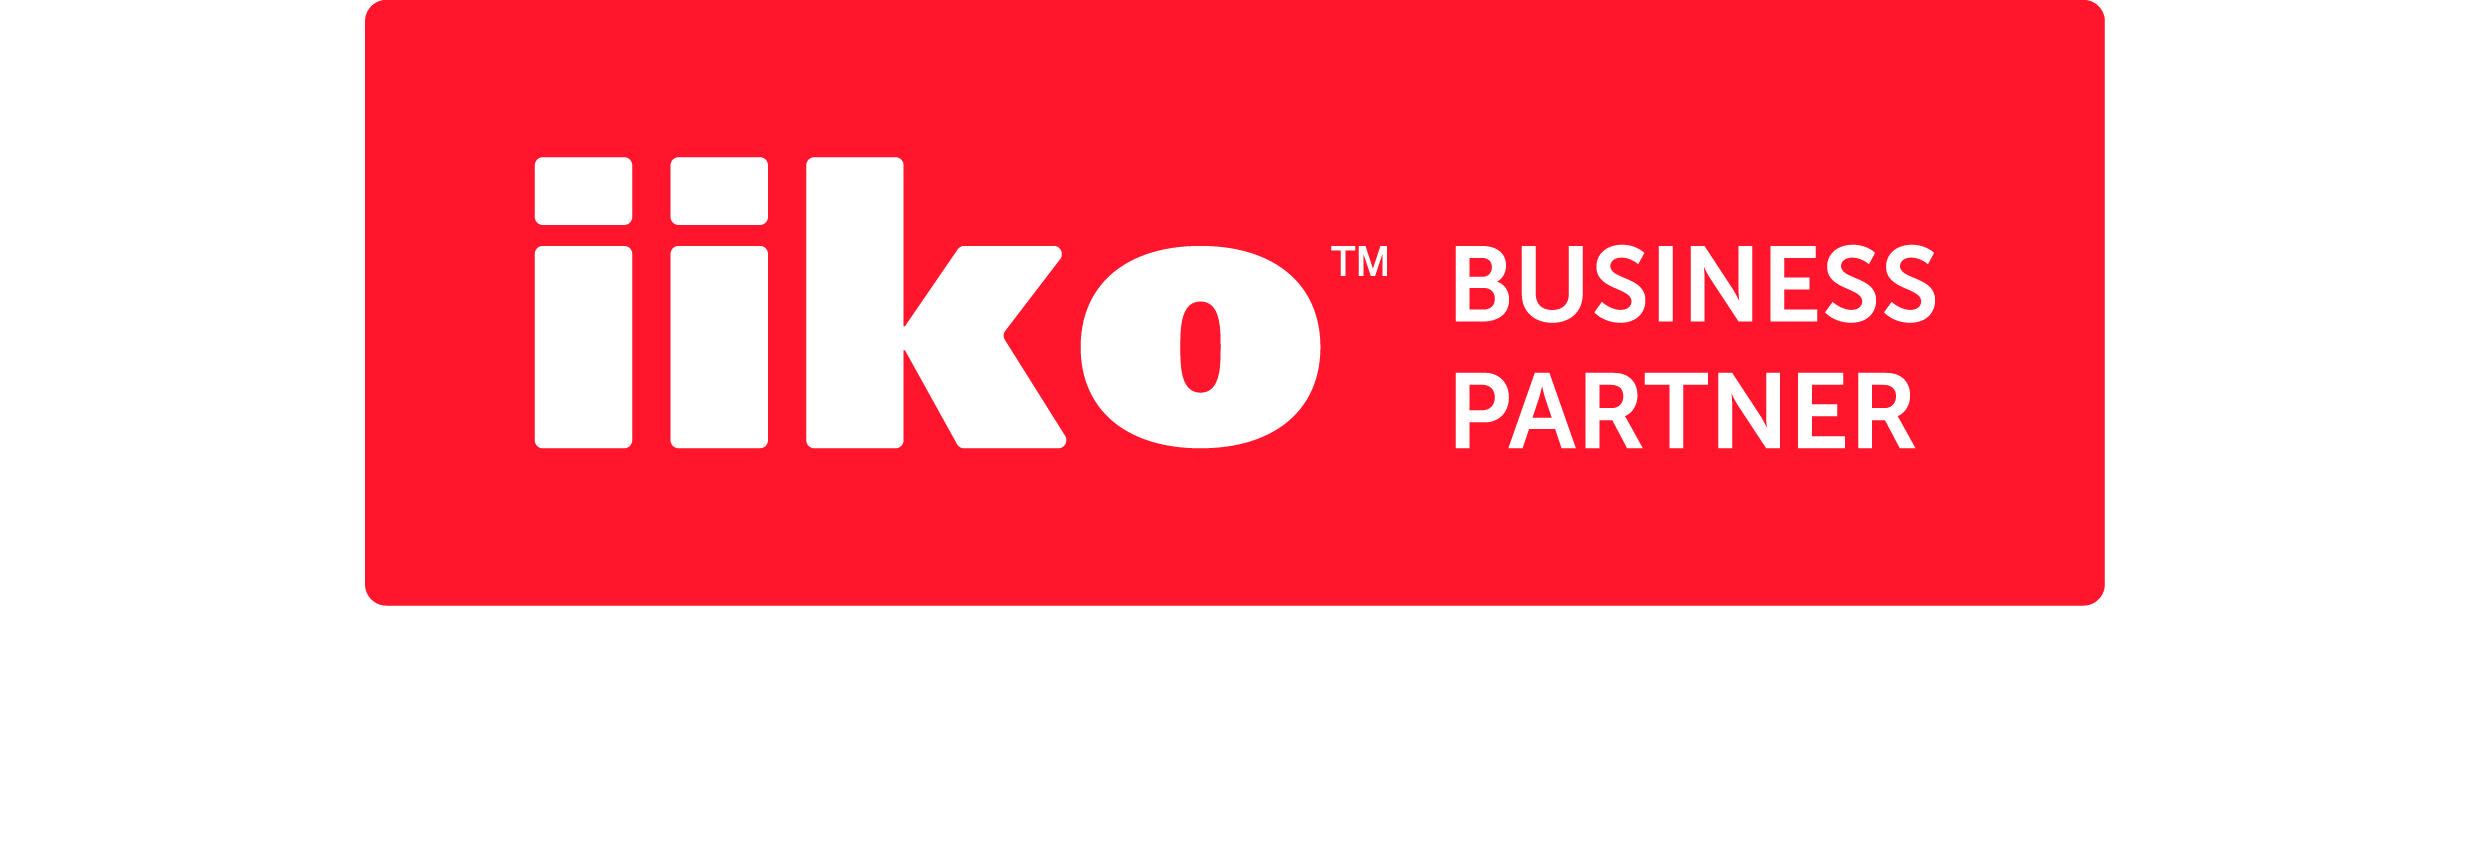 Официальный бизнес-партнер iiko в Беларуси